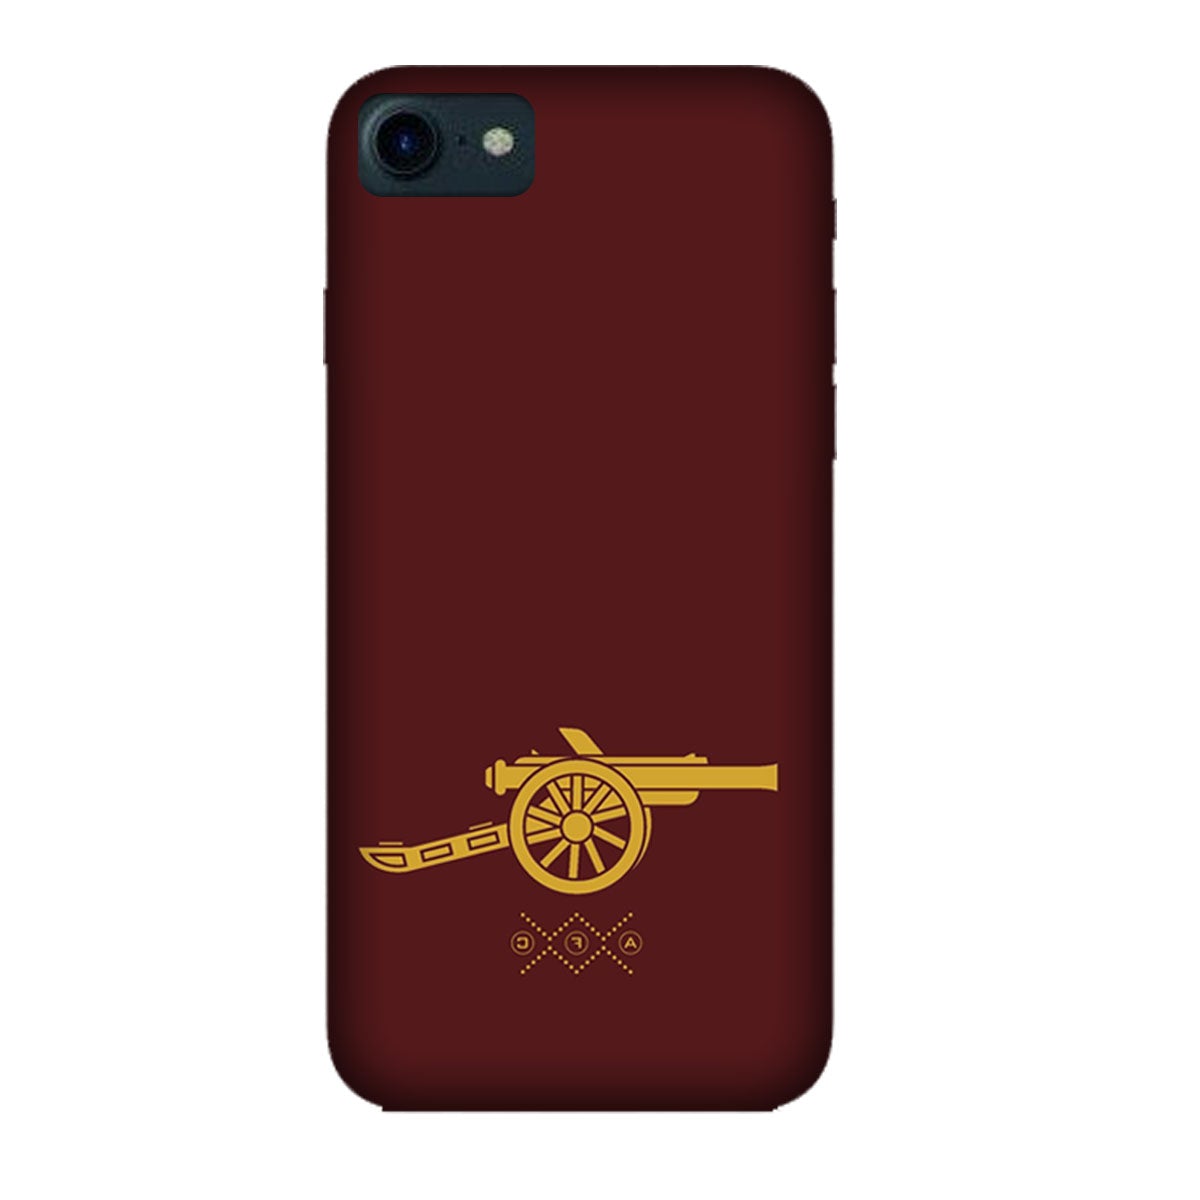 Arsenal - Gunner- Maroon - Mobile Phone Cover - Hard Case